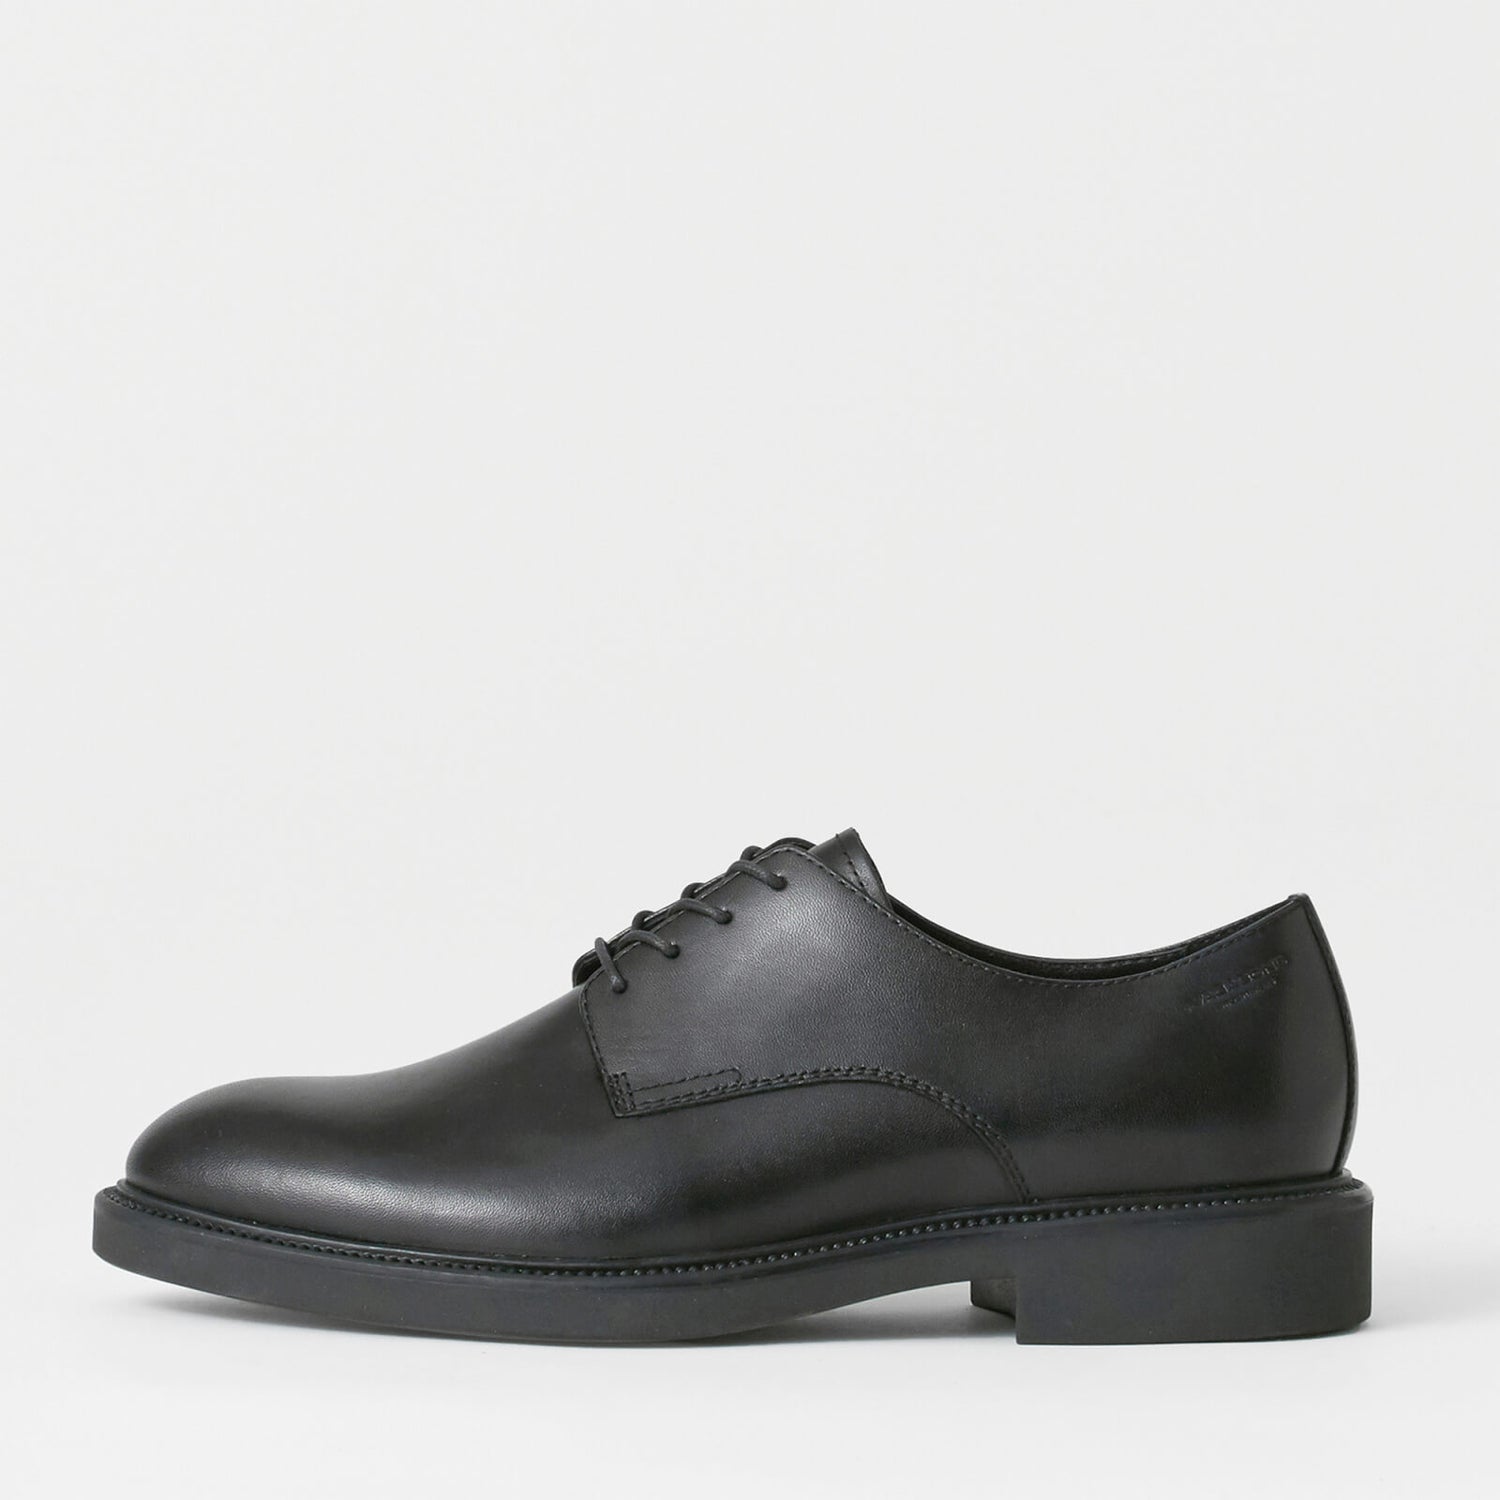 Vagabond Alex M Leather Derby Shoes - UK 7.5